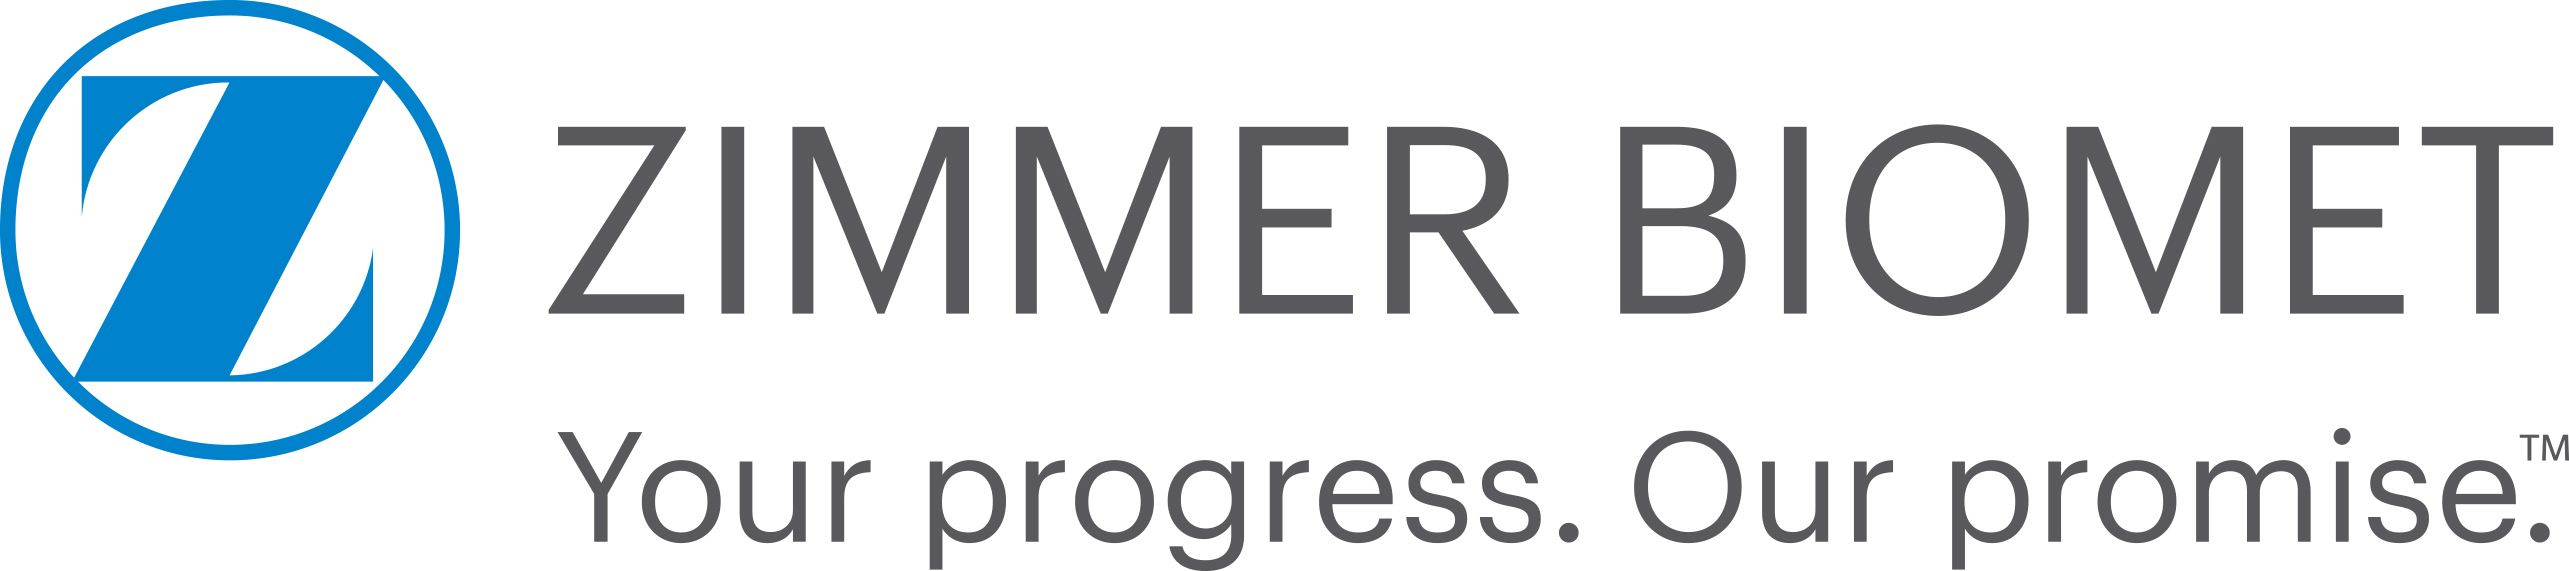 ZIMMER-BIOMET Corporate Forum